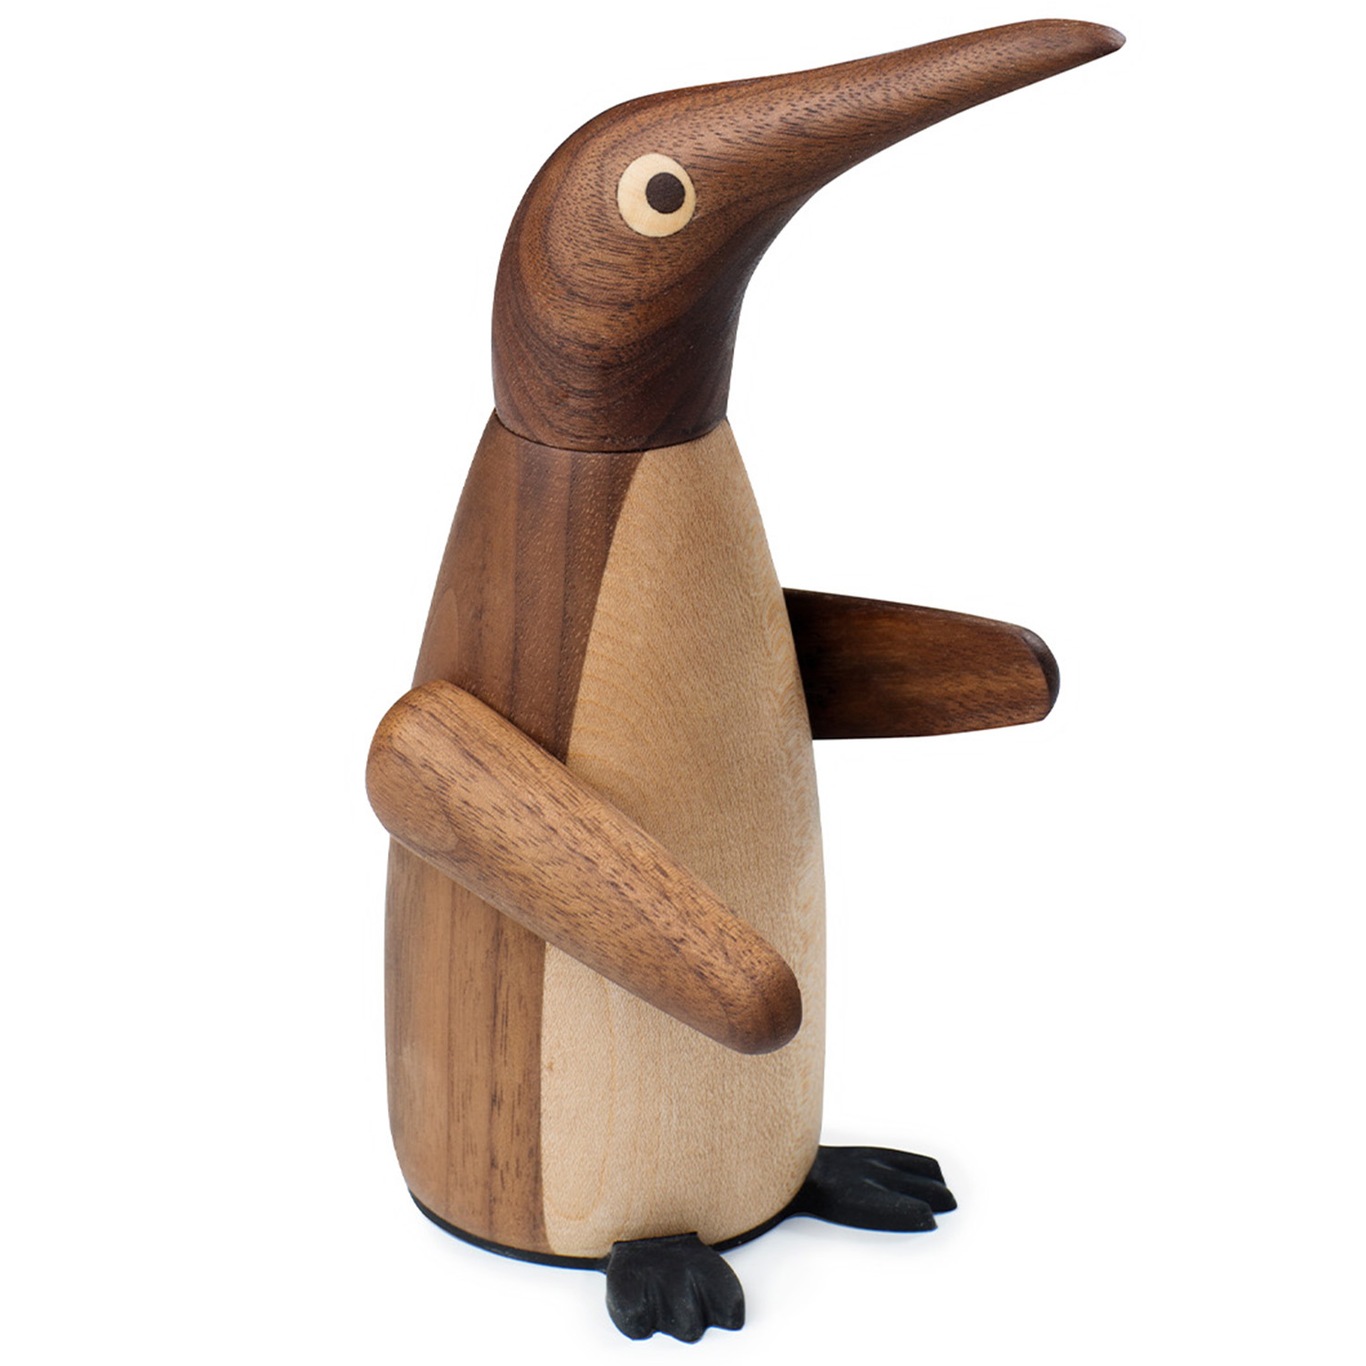 The Salt Penguin Saltkvarn 17 cm